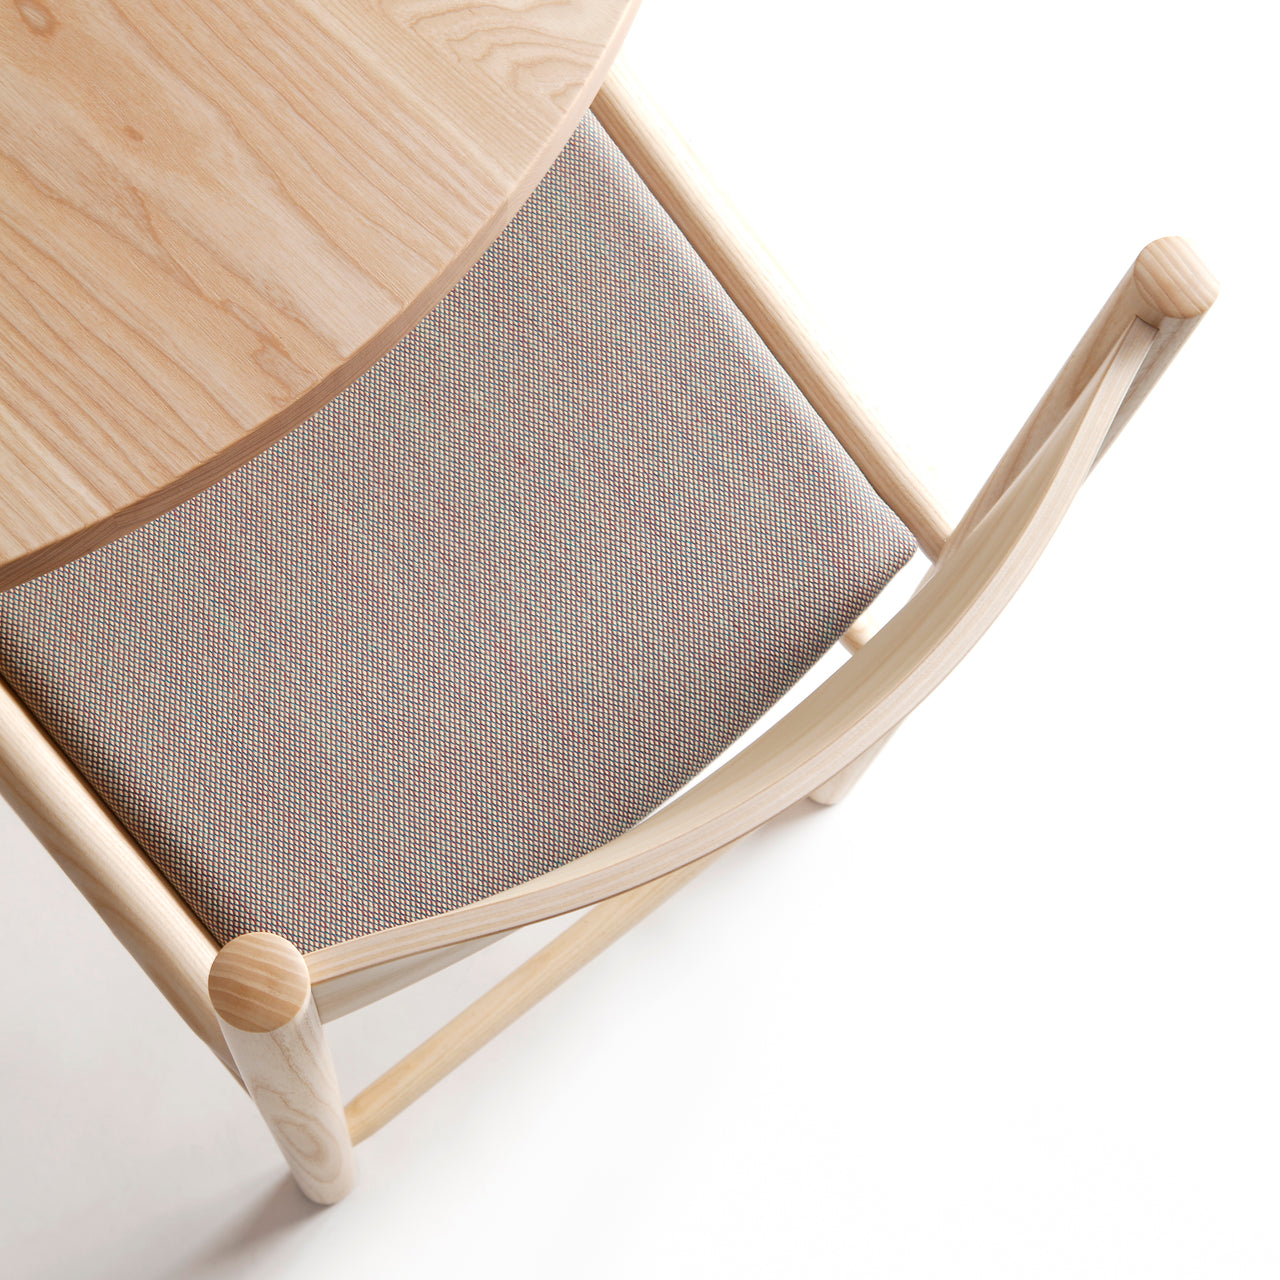 Akademia Chair: Upholstered